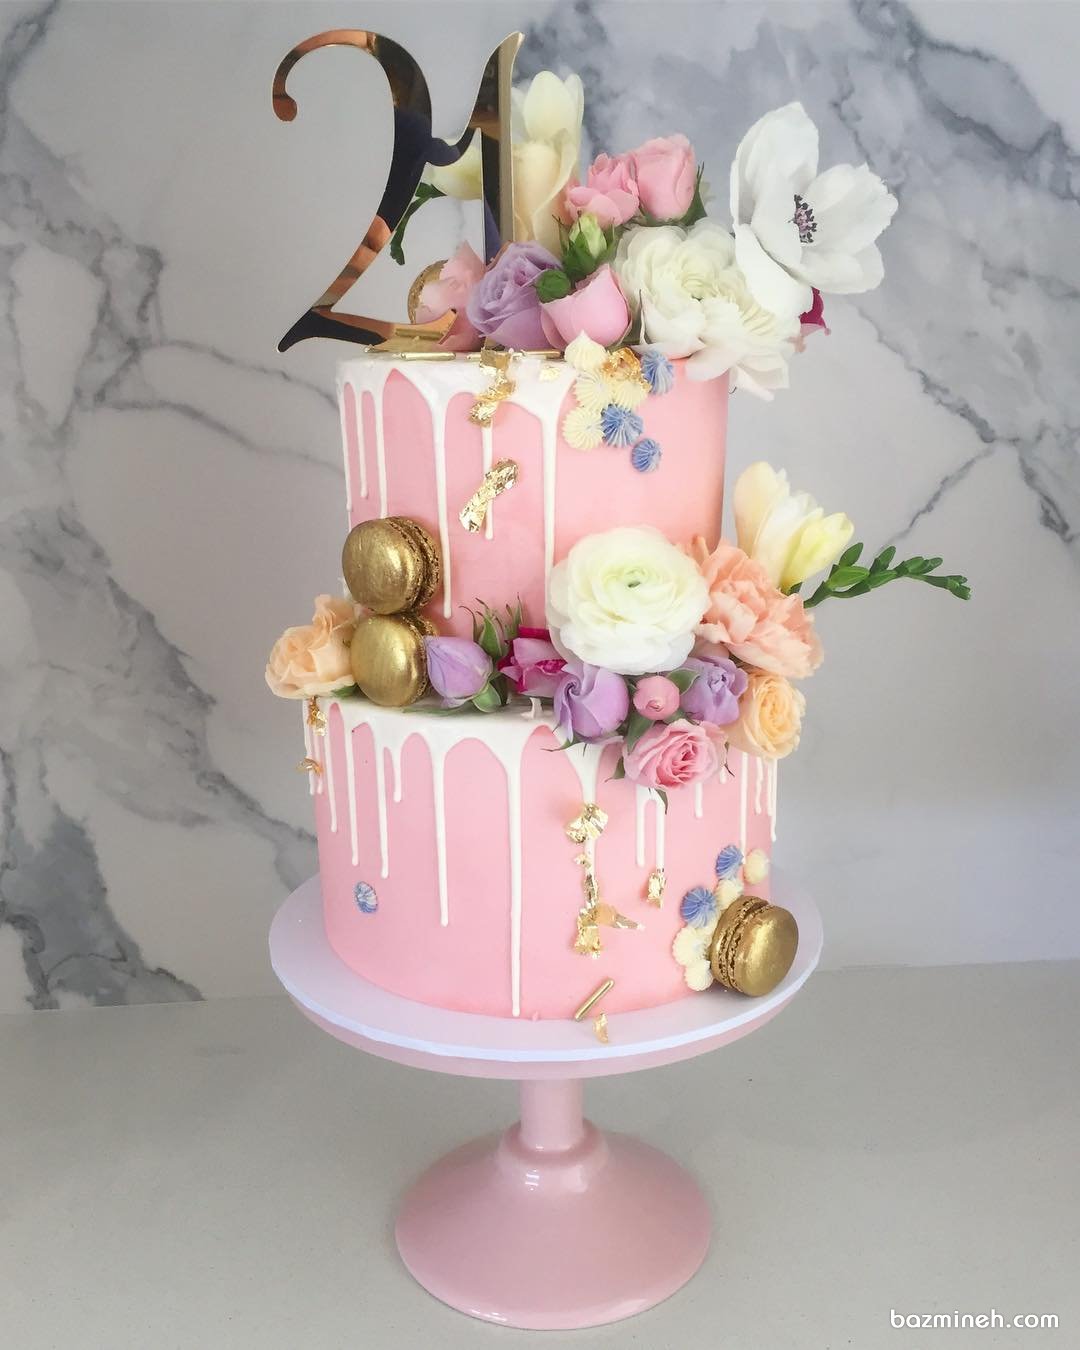 کیک دو طبقه جشن تولد دخترونه با تم صورتی طلایی تزیین شده با گل های رز طبیعی و ماکارون